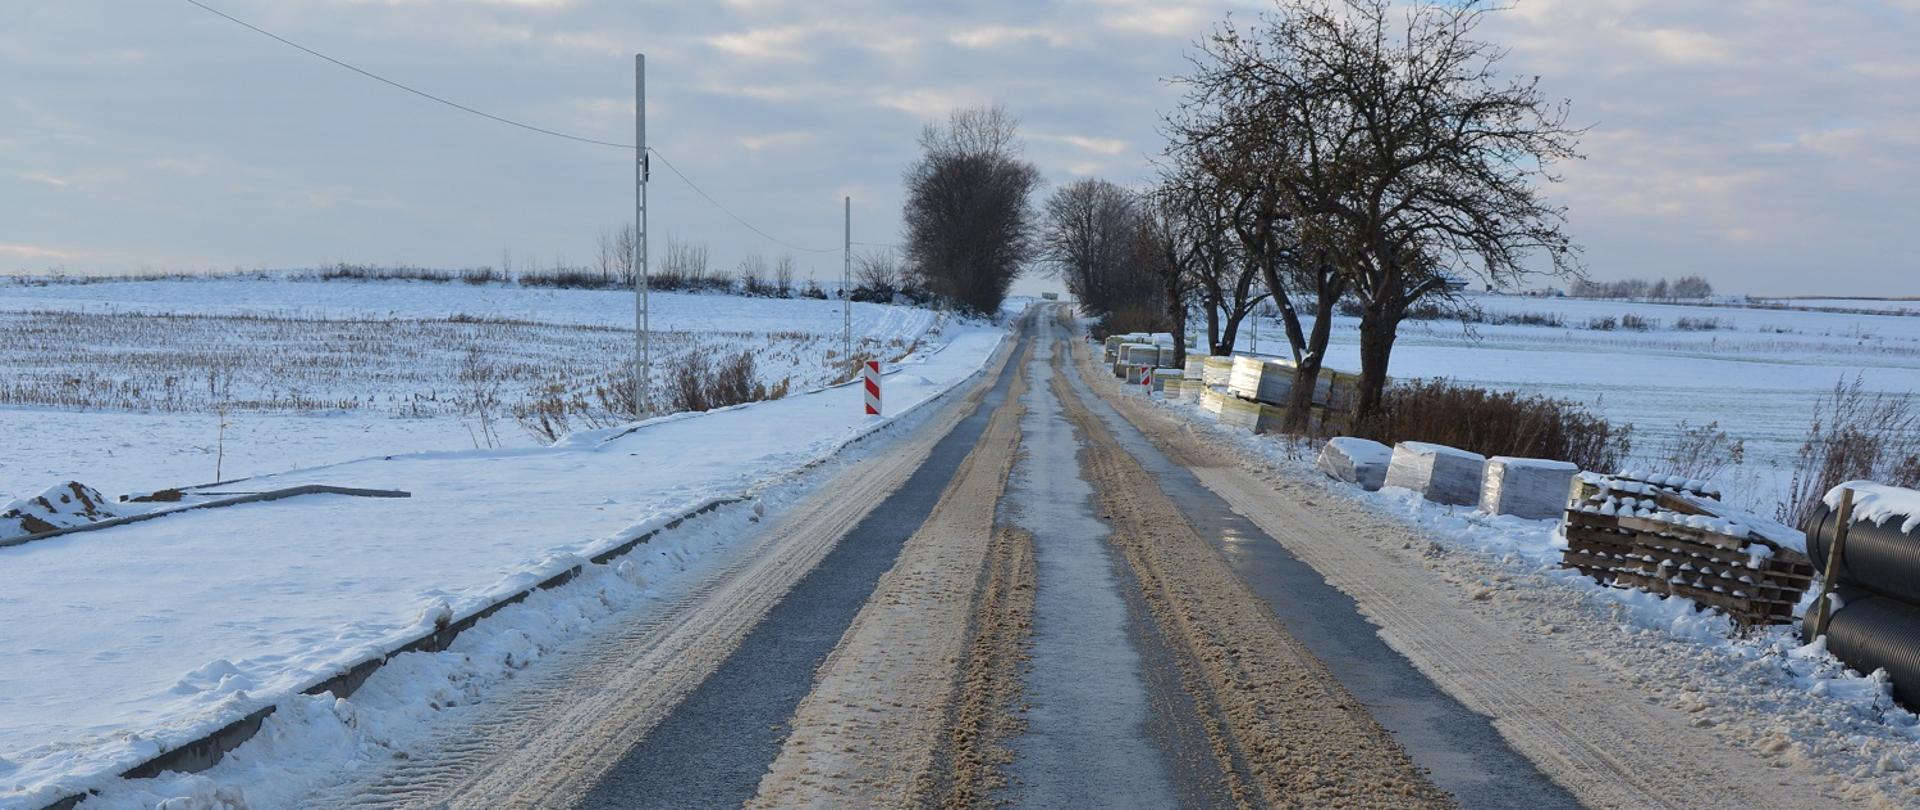 droga asfaltowa pokryta śniegiem 